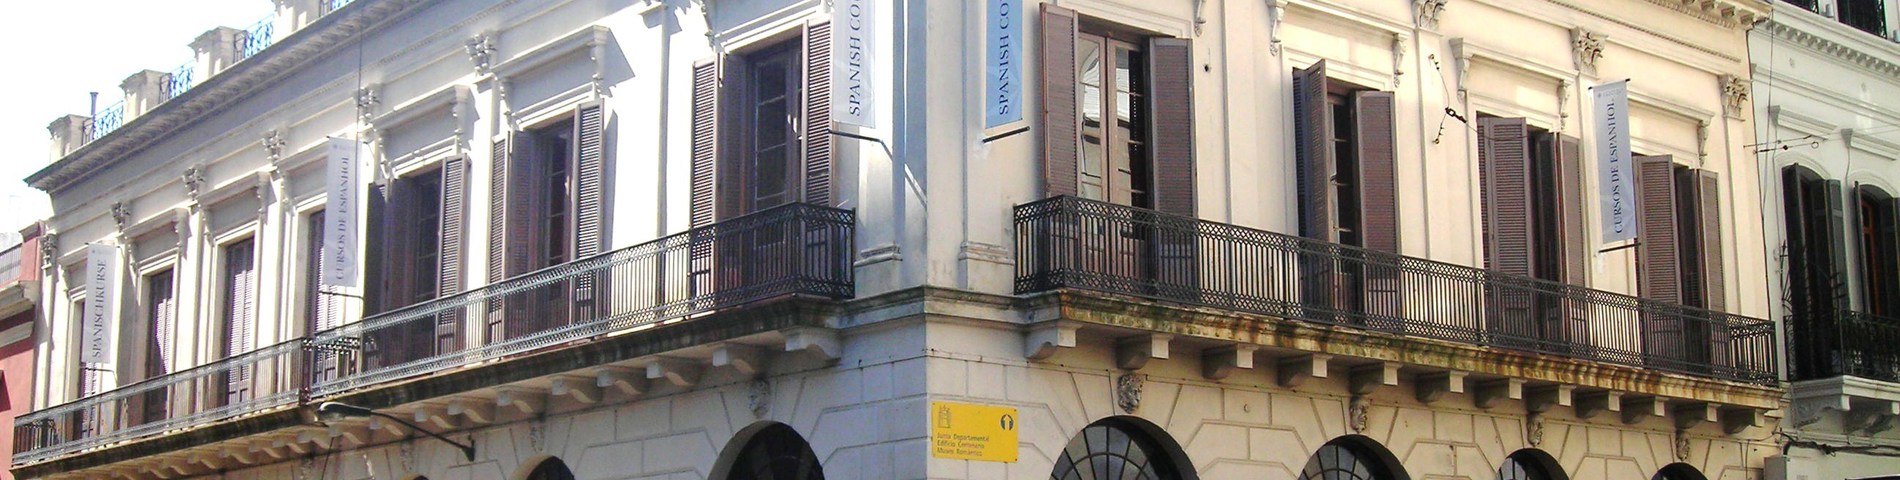 Academia Uruguay obrazek 1